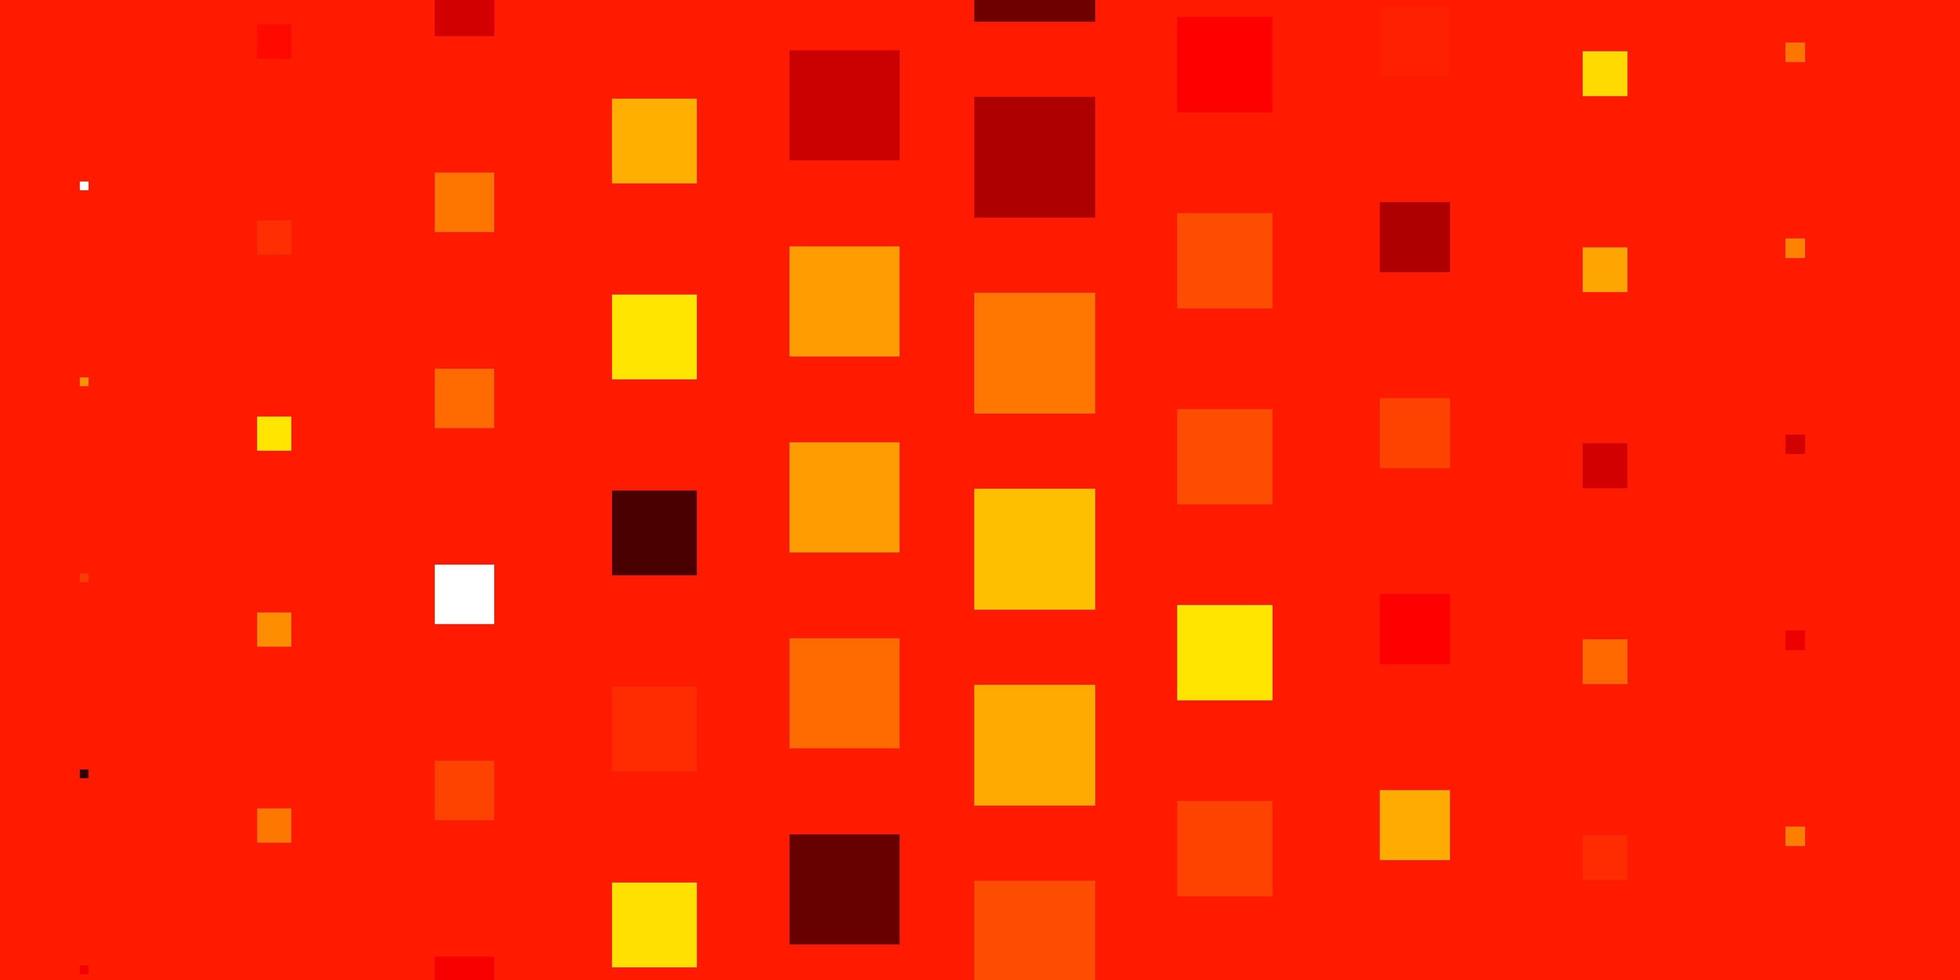 plantilla de vector rojo claro, amarillo en rectángulos.